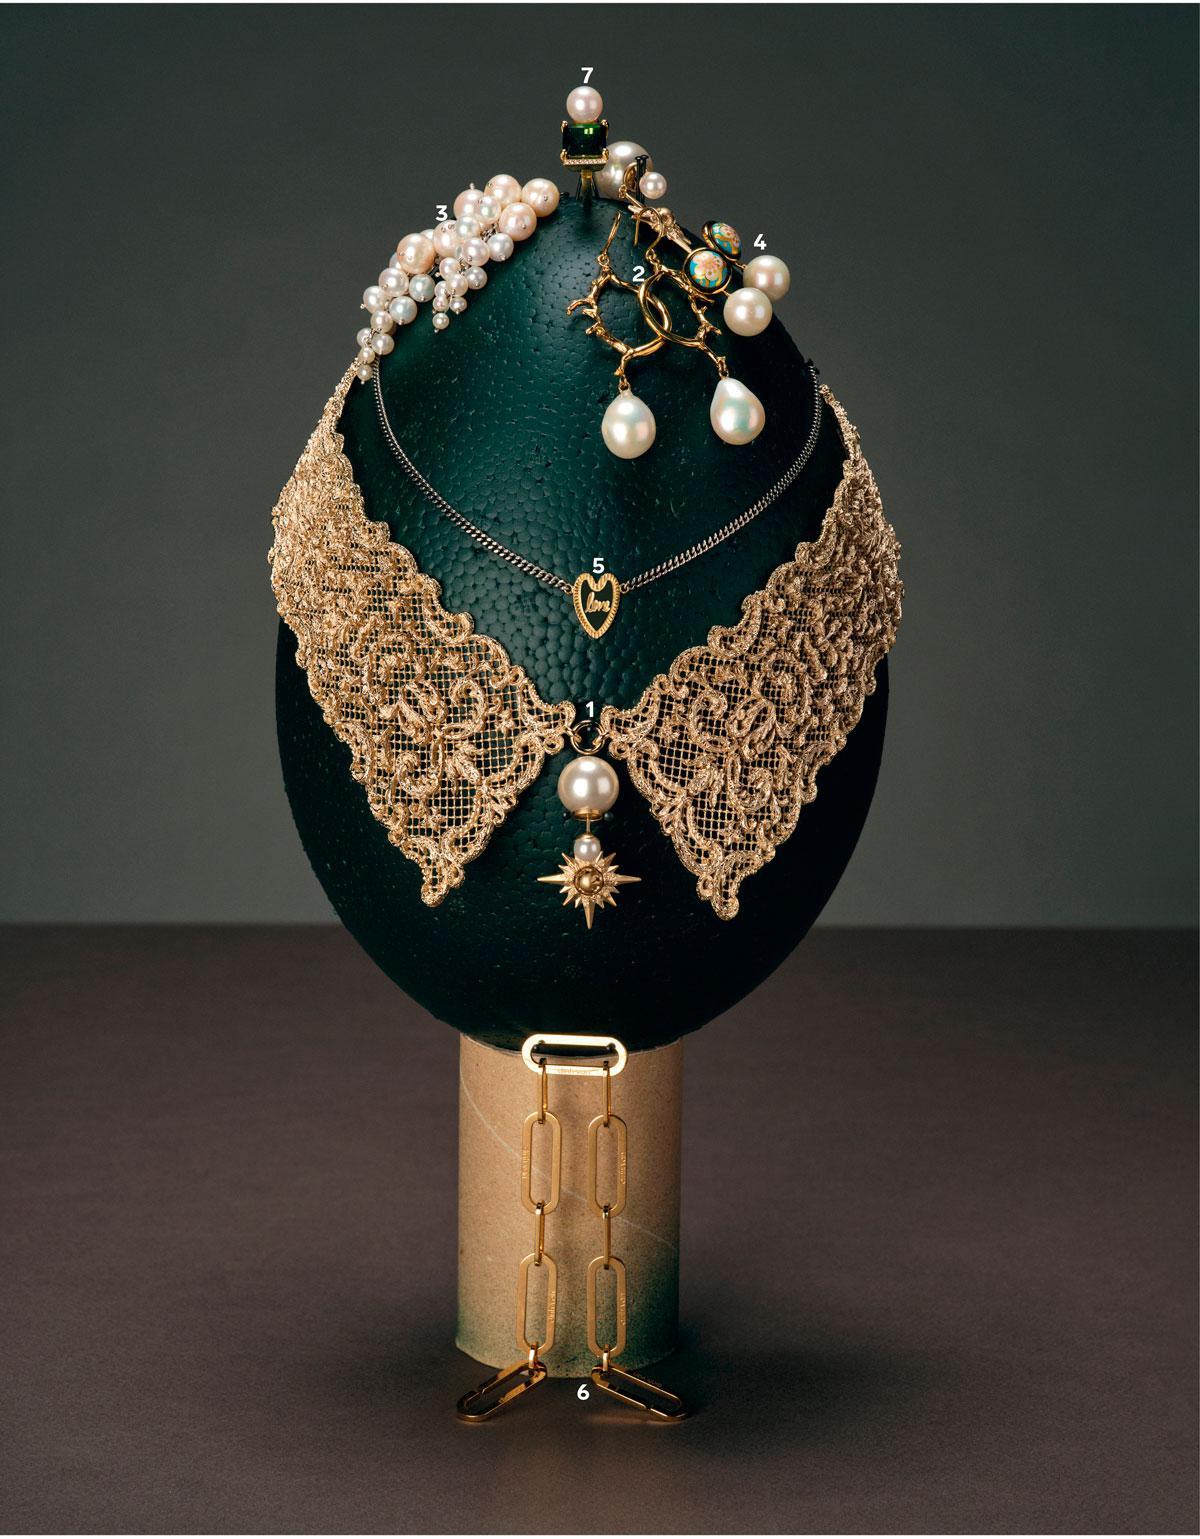 Collier doré D-Renaissance et boucle d’oreille dorée ornée d’une perle en résine et d’une étoile (1), Dior. Créoles avec aiguilles et grande perle (2), Wouters & Hendrix. Boucles d’oreilles en or jaune 18 carats et petites grappes de perles (3), Anne Zellien. Boucle d’oreille pendante avec perles et motif fleuri (4), Freywille. Chaîne fine dorée avec pendentif cœur (5), Anna+Nina. Bracelet à maillons en or 18 carats (6), Dinh Van. Bague Lustre en or 18 carats avec tourmaline, perle et diamant (7), Lore Van Keer.